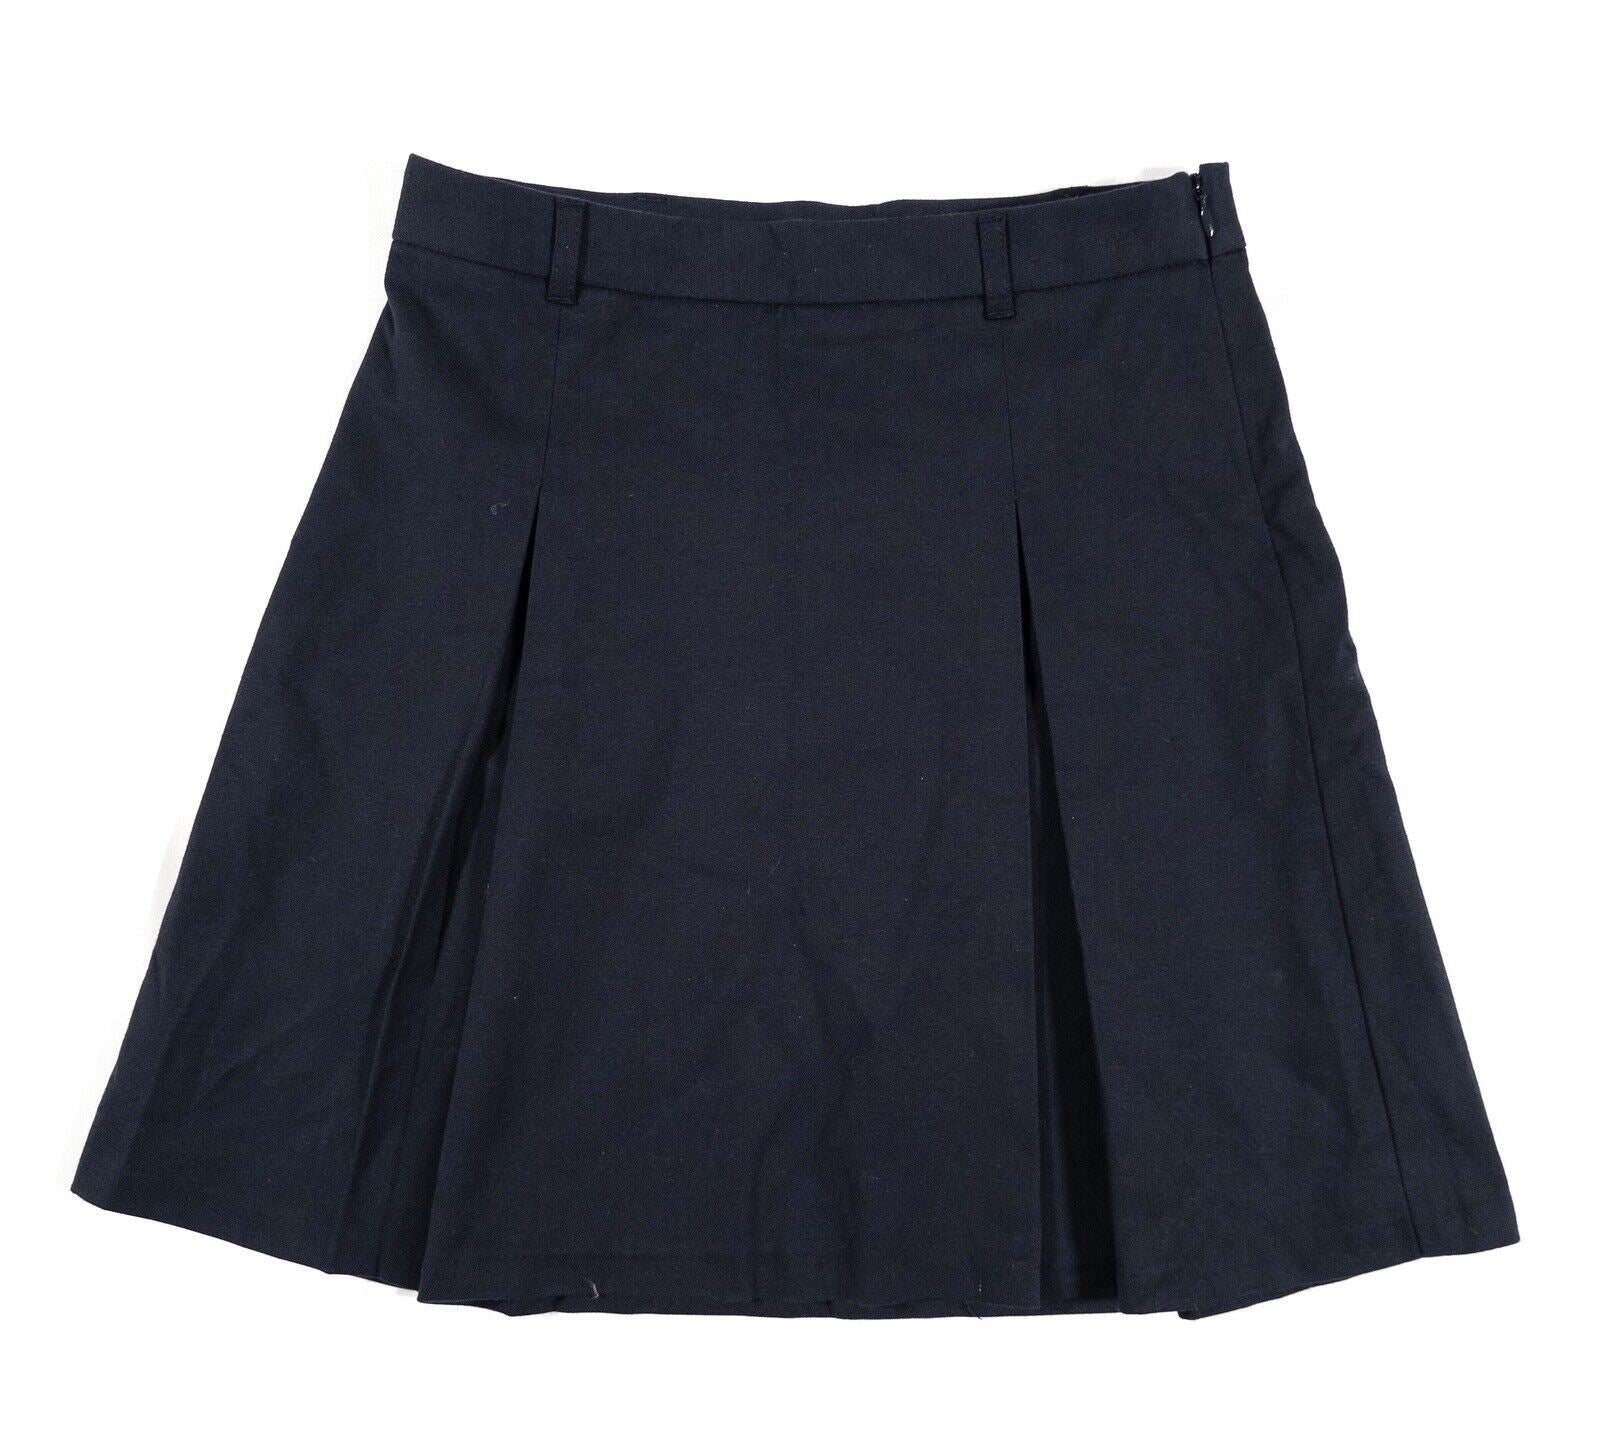 UNITED COLOURS OF BENETTON Kids Girls School Skirt Navy Blue Size UK 10-11 Years